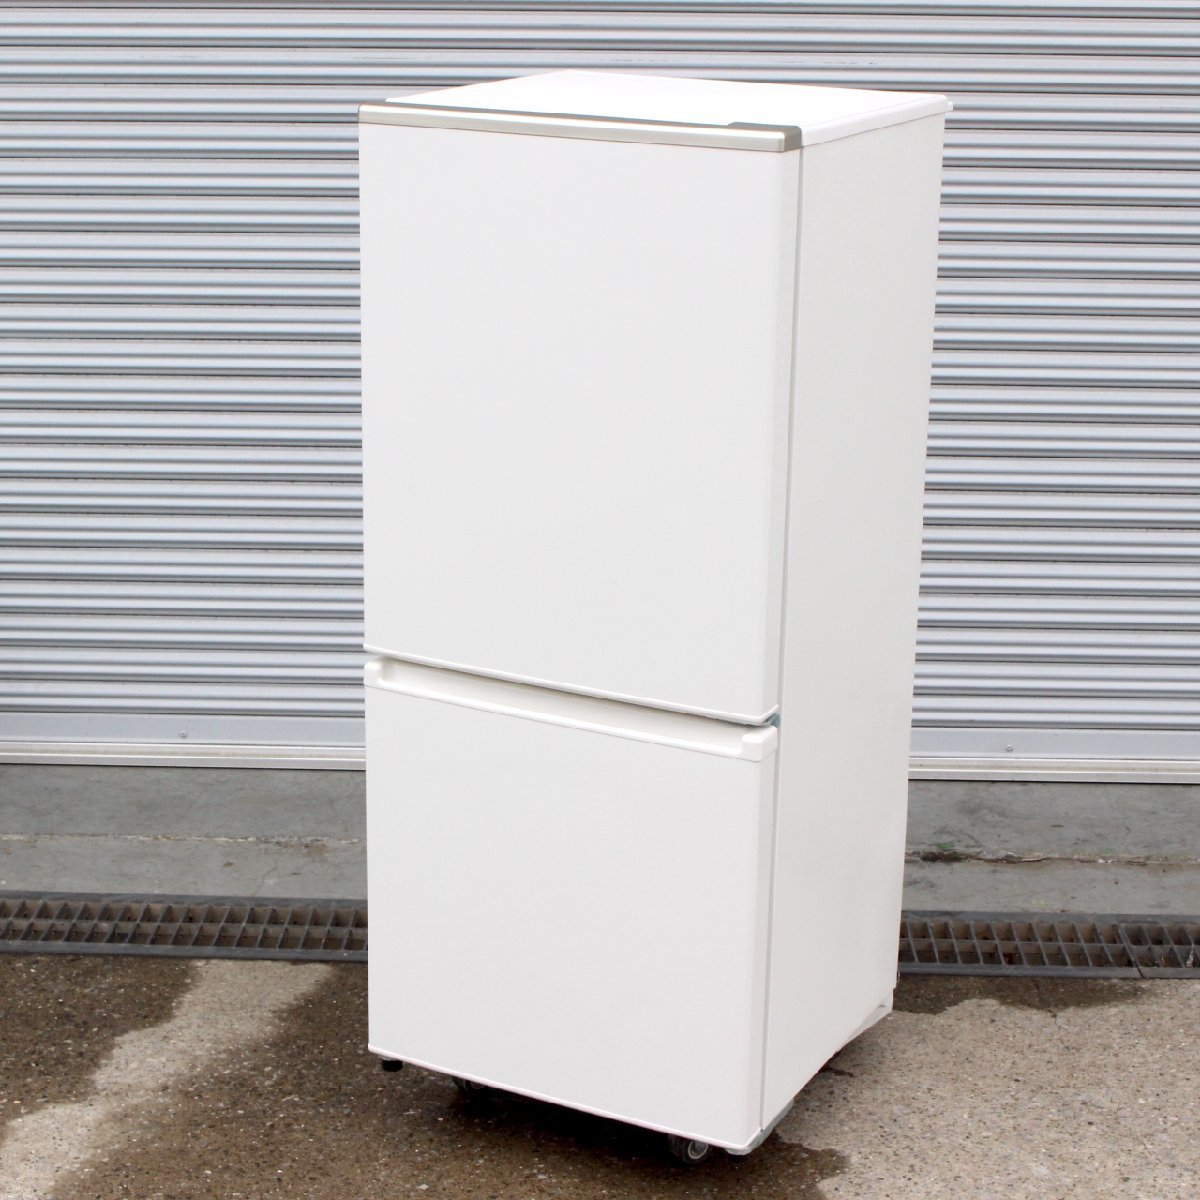 横浜市泉区にて アクア 冷凍冷蔵庫 AQR-17KBK 2021年製 を出張買取させて頂きました。